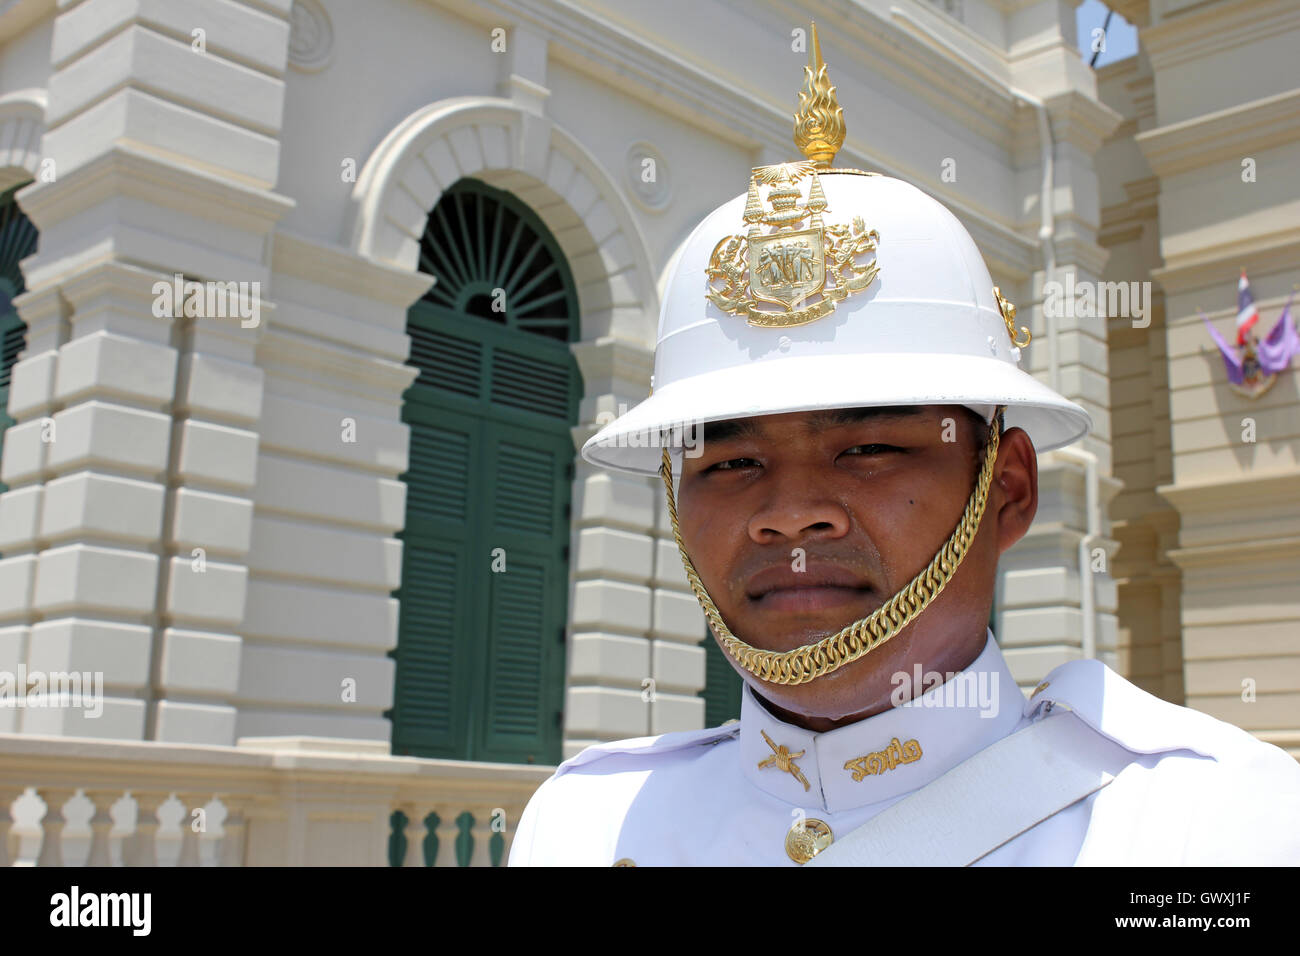 Royal Guard At Chakri Mahaprasad Hall, Grand Palace Bangkok, Thailand Stock Photo